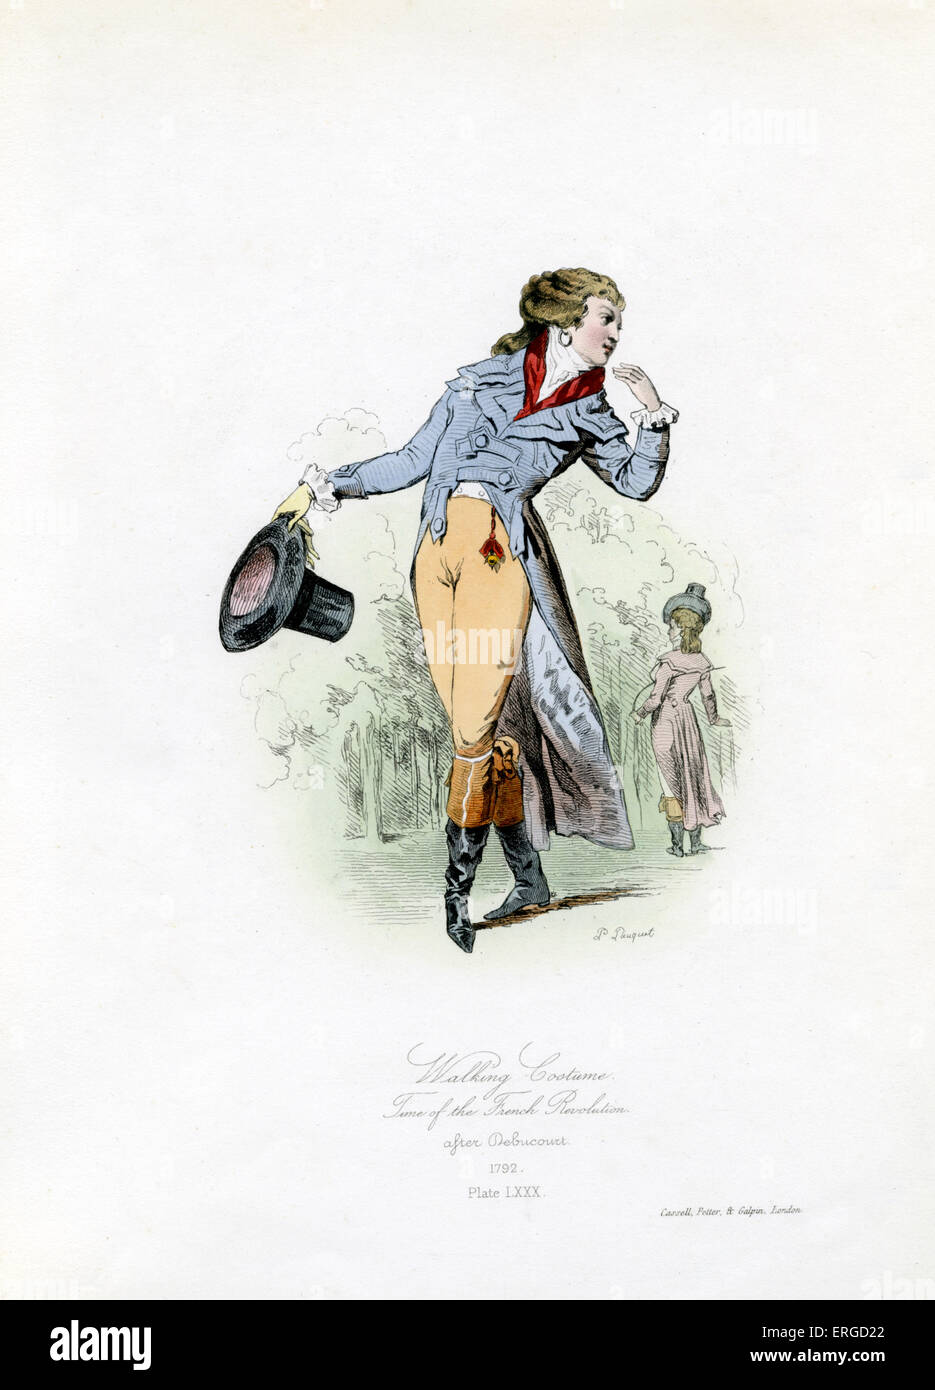 Kleidung während der französischen Revolution 1792 - vom Kupferstich von Polidor Pauquet nach Debucourt Fuß. Französische Revolution: Stockfoto